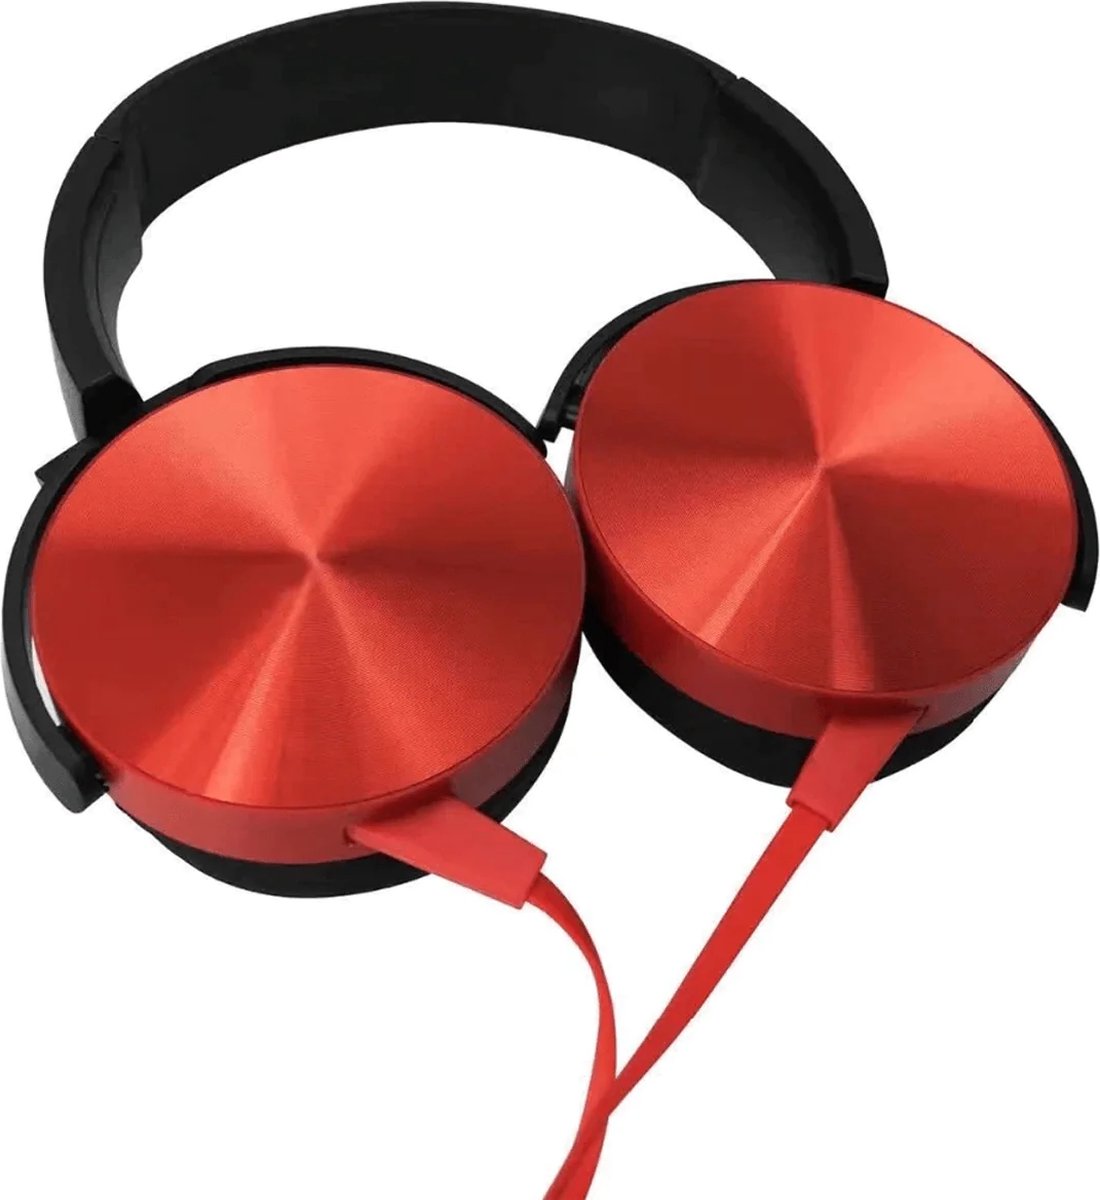 Headset met Microfoon - Computer Headset - Koptelefoon met Microfoon - Headset - Laptop - Koptelefoon - 3.5mm - Plug & Play 450AP (rood)